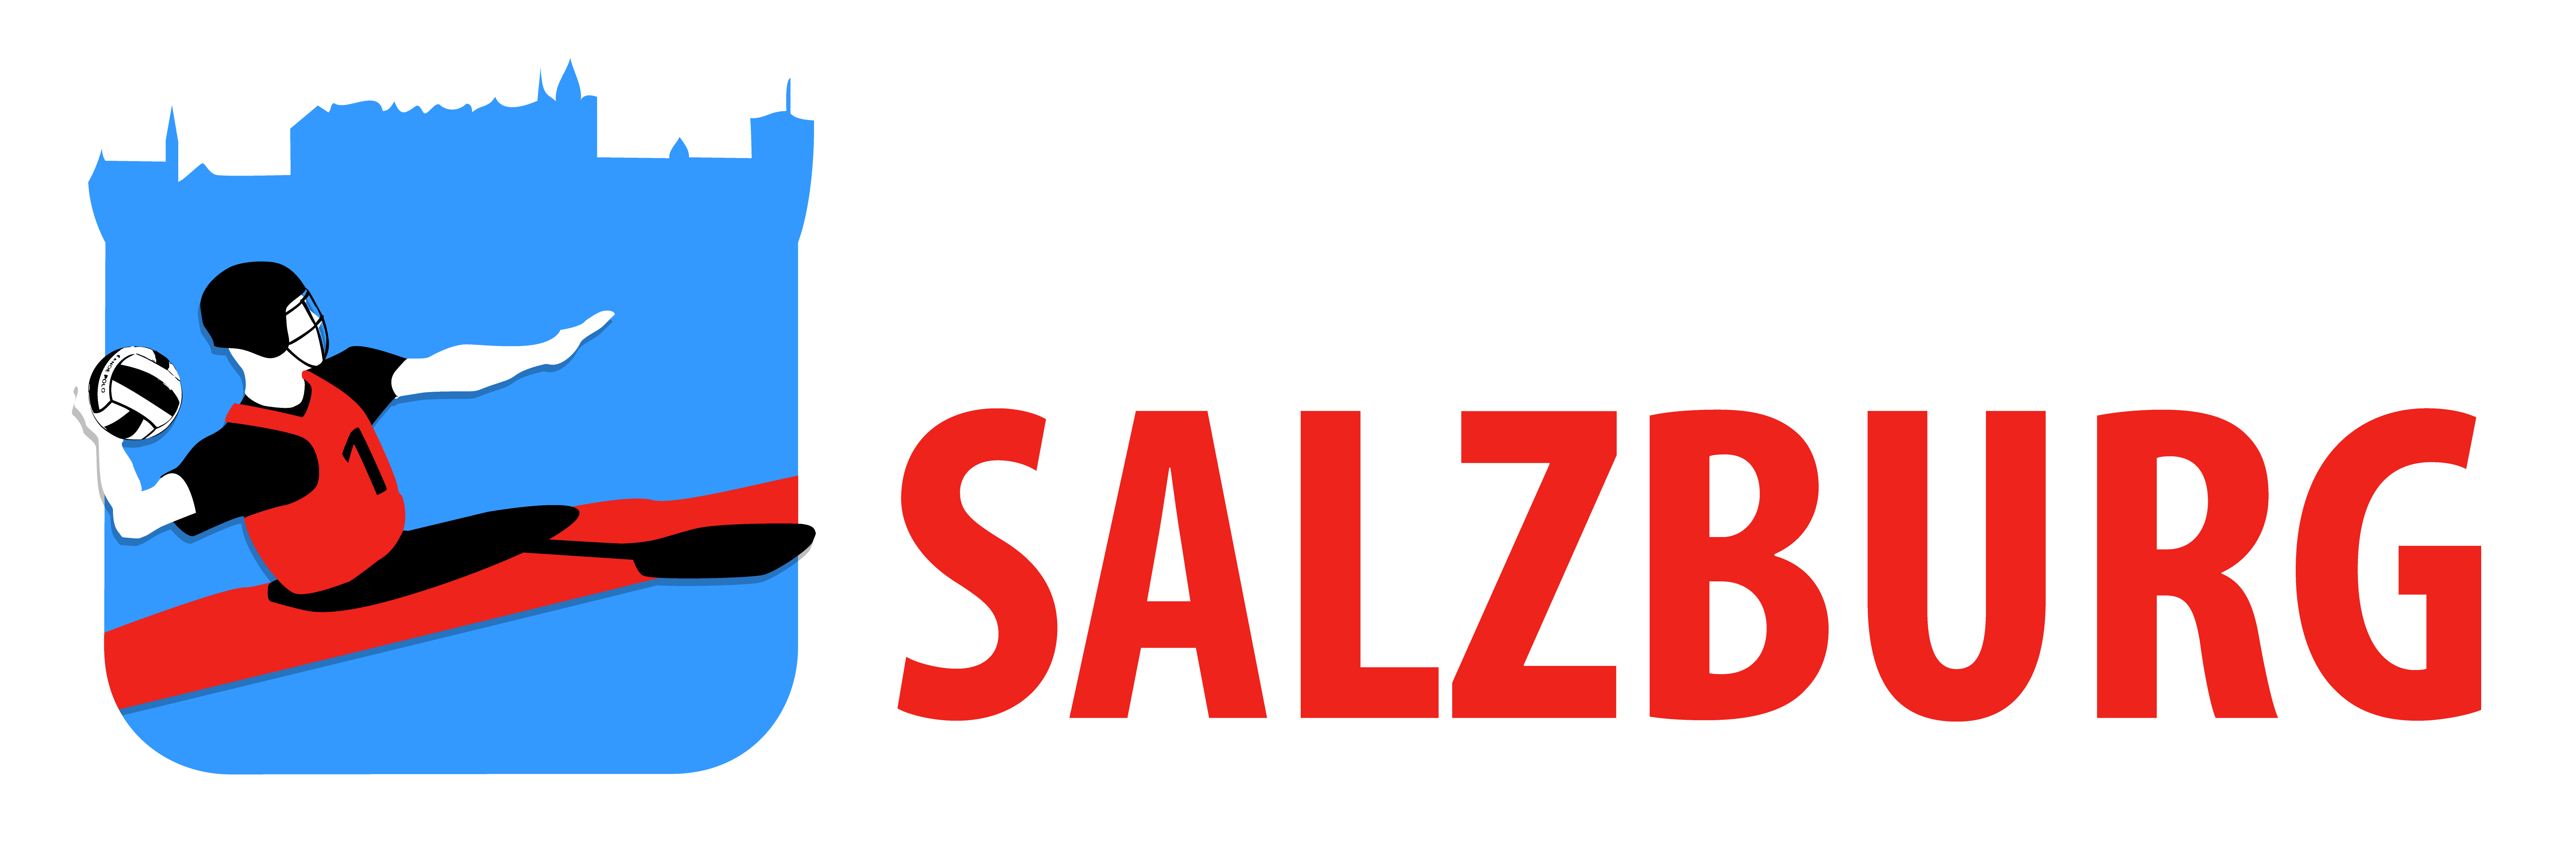 Salzburg wird österreichischer Vizemeister im Kanupolo